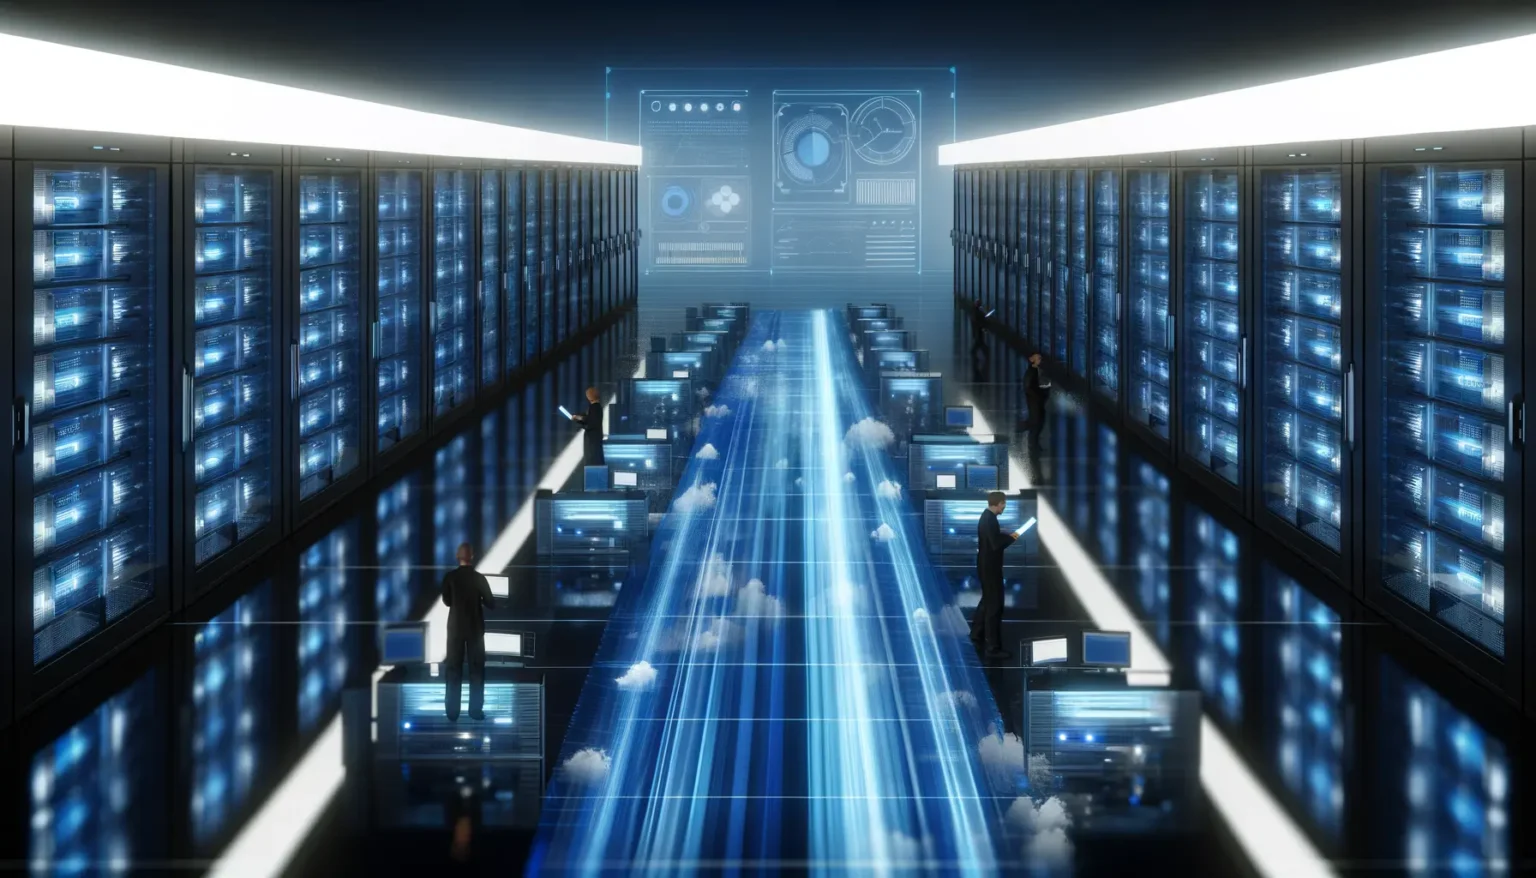 Futuristische Darstellung eines Serverraums mit Reihen von Serverschränken und Daten, die als blaue Lichtströme zwischen den Racks fließen. Personen in Anzügen interagieren mit holographischen Displays und überwachen die Datenaktivität.